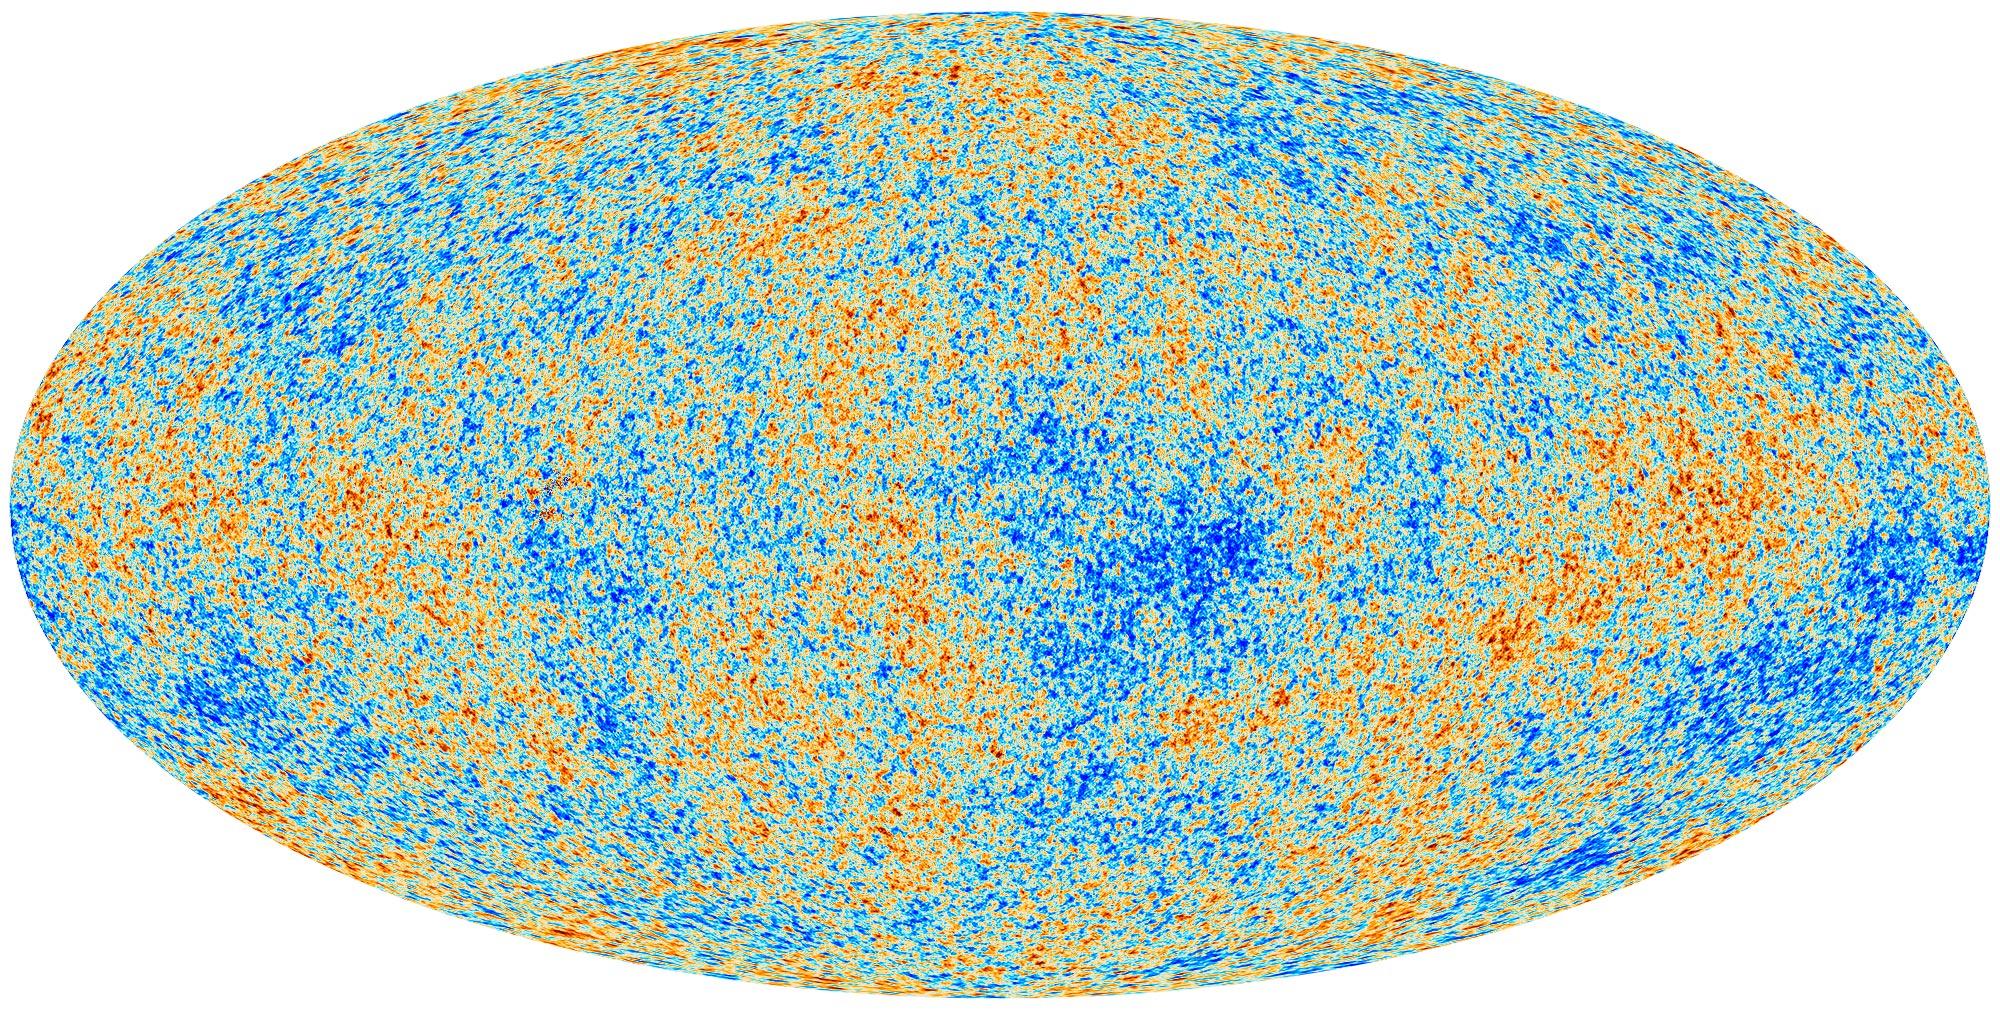 A Planck műhold hamisszínes felvétele a kozmikus háttérsugárzás hőmérséklet-fluktuációiról